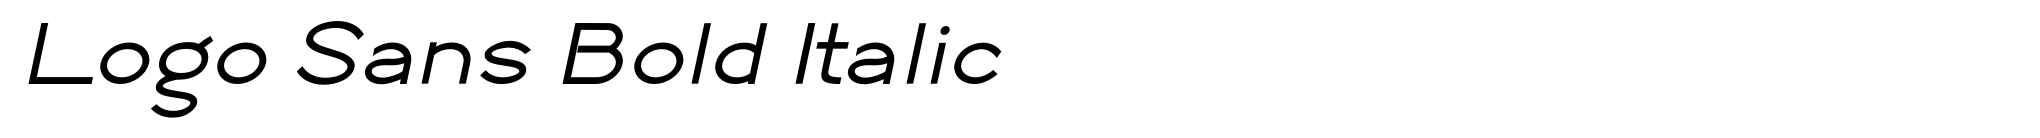 Logo Sans Bold Italic image